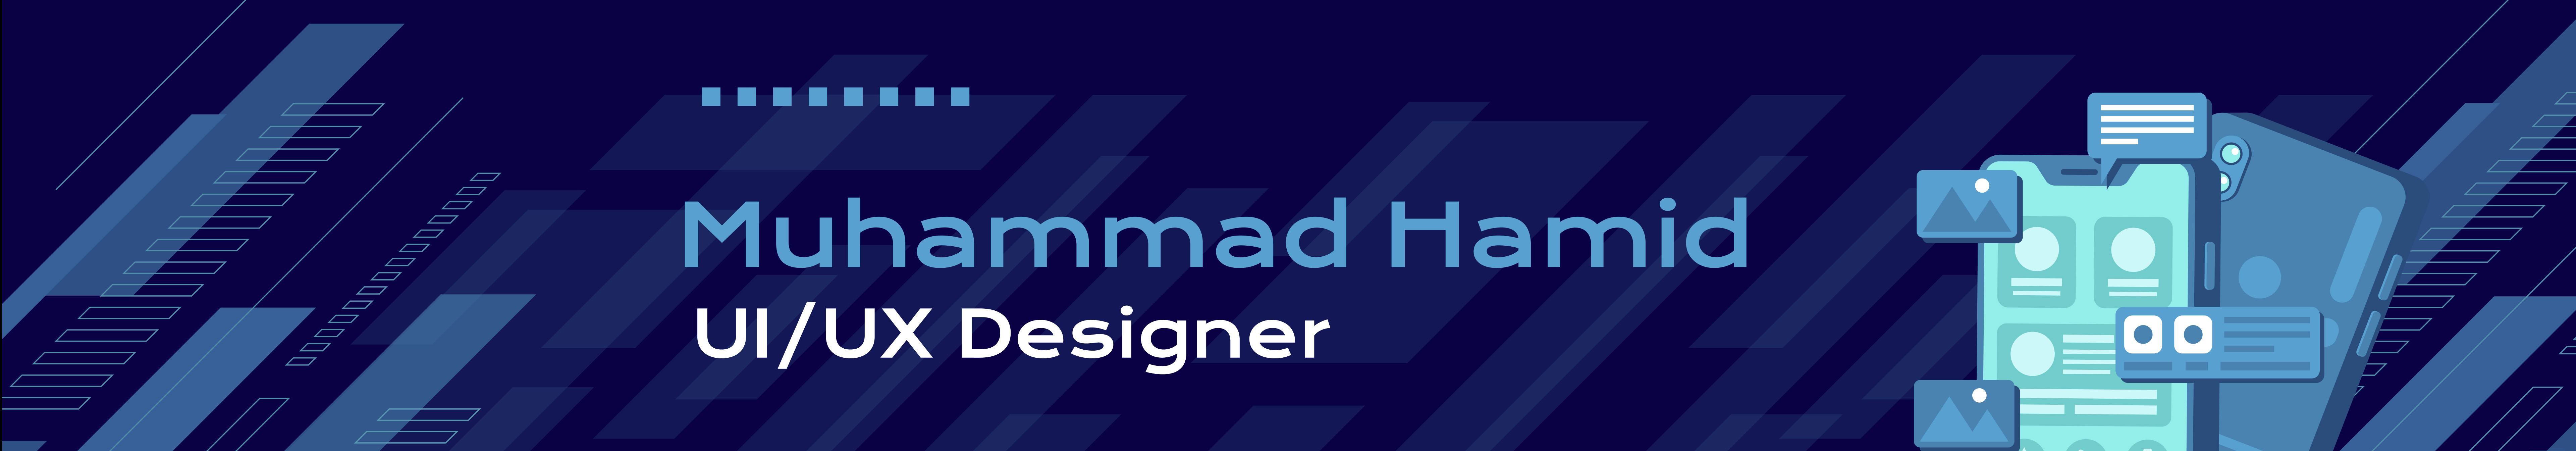 Баннер профиля Muhammad Hamid